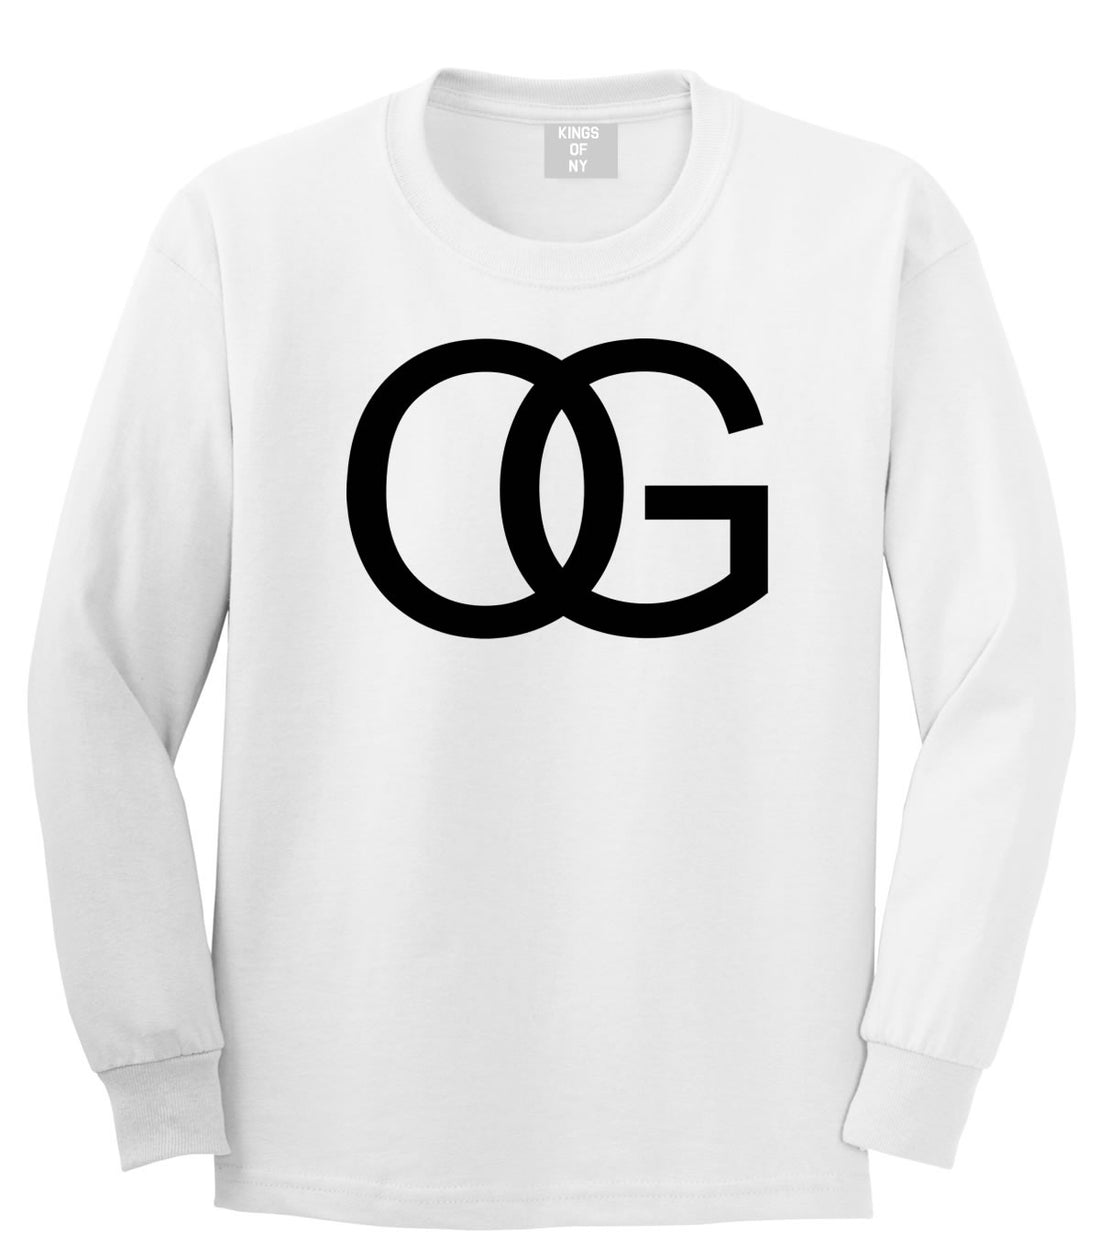 OG Original Gangsta Gangster Style Green Long Sleeve Boys Kids T-Shirt in White by Kings Of NY